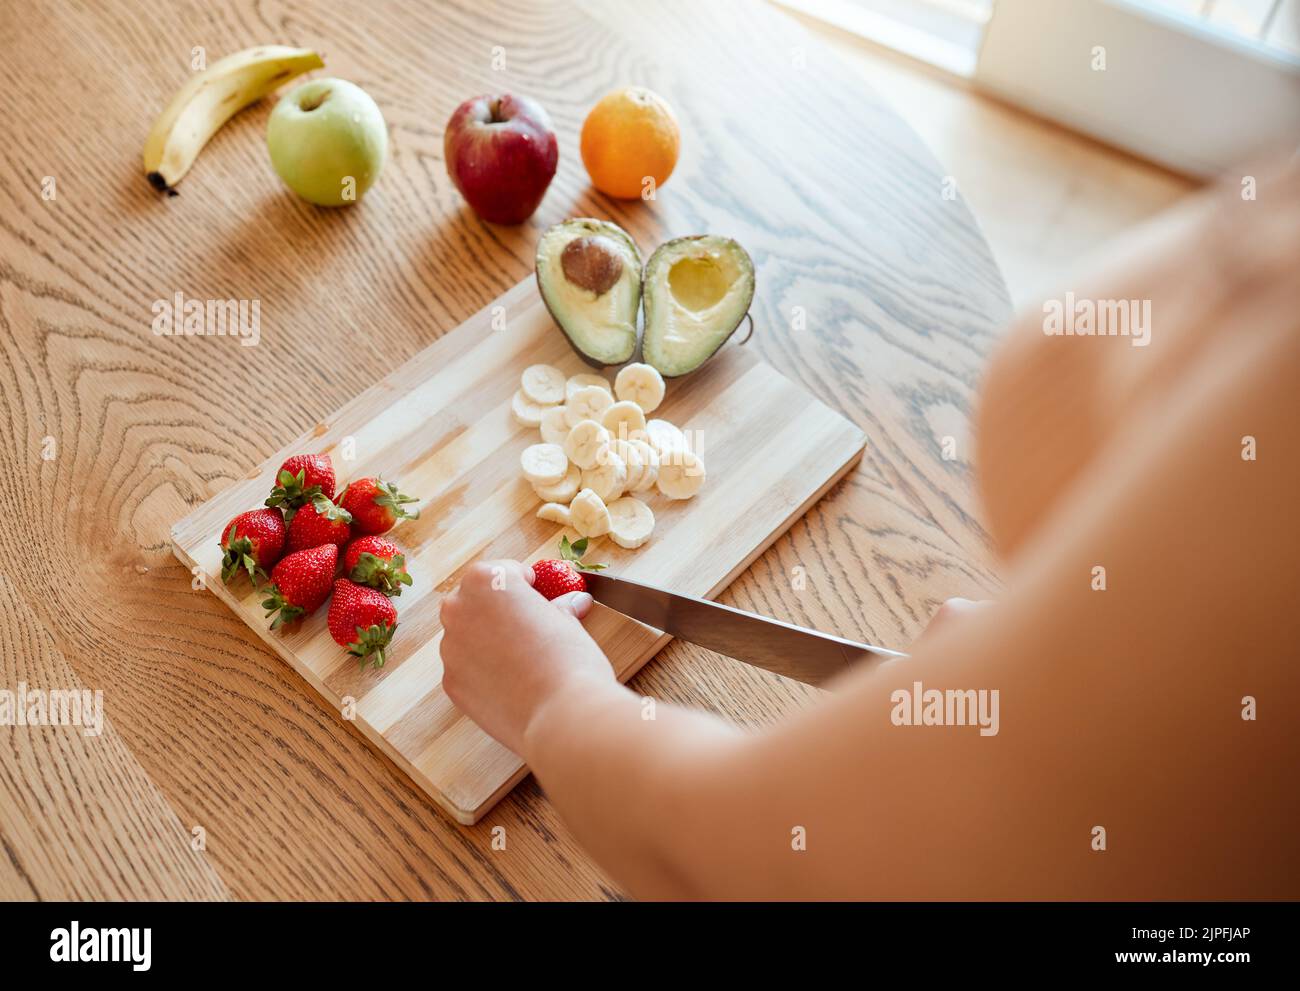 Gesundheit, Ernährung und gesunde Frau schneiden Obst, um einen Smoothie mit Ernährung für eine Bio-Mahlzeit zu Hause zu machen. Nahaufnahme der kaukasischen weiblichen Hände, die hacken Stockfoto